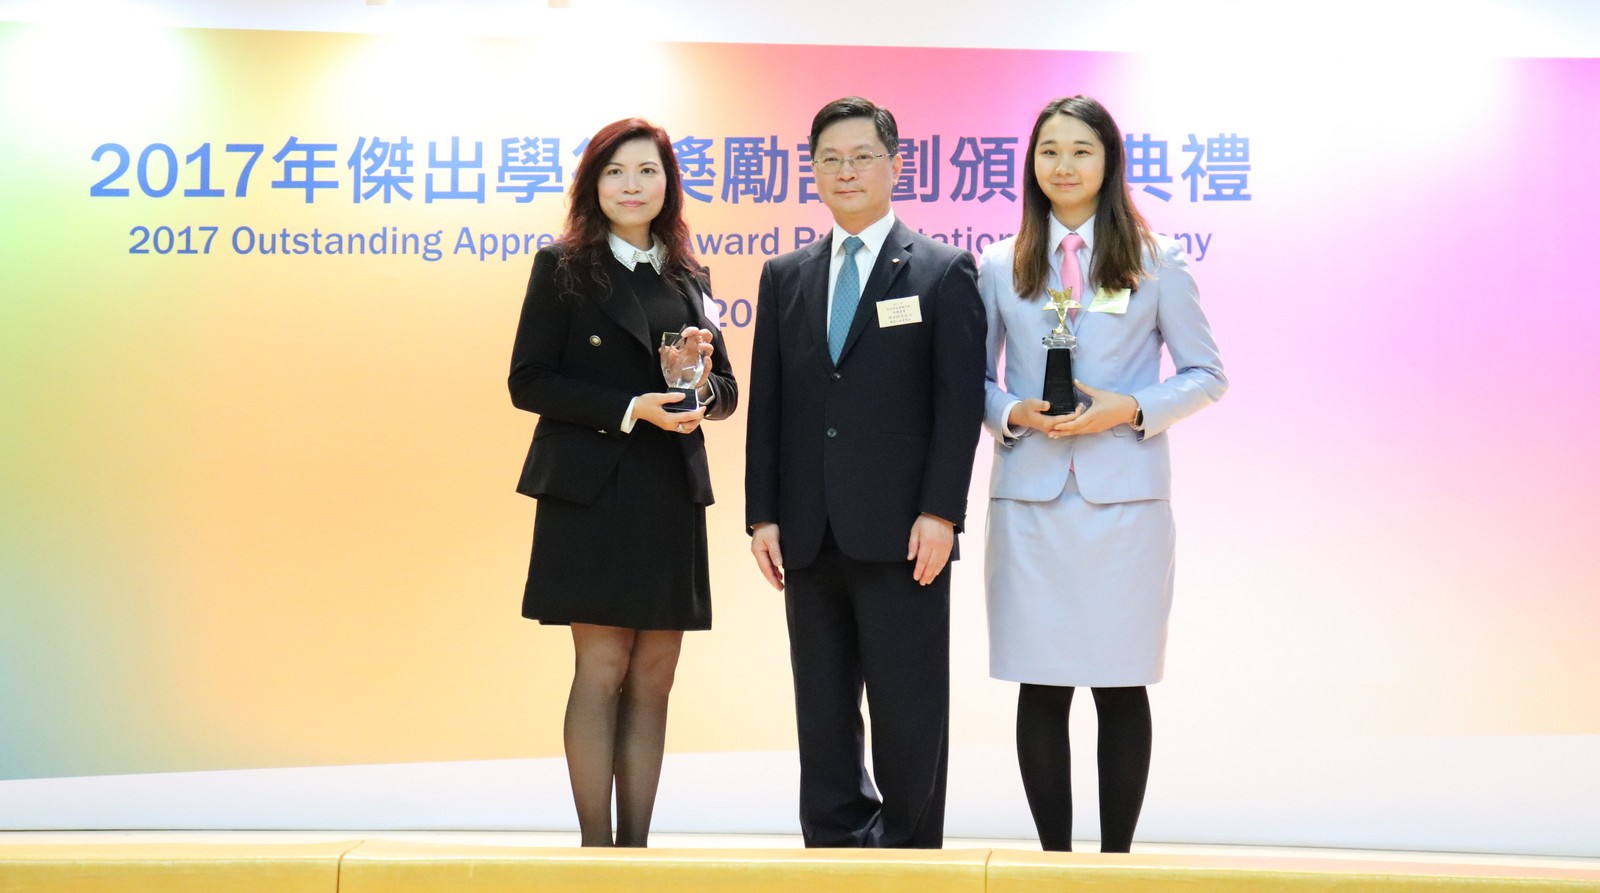 江詠儀小姐（右）是「2017年傑出學徒獎勵計劃」得獎者之一